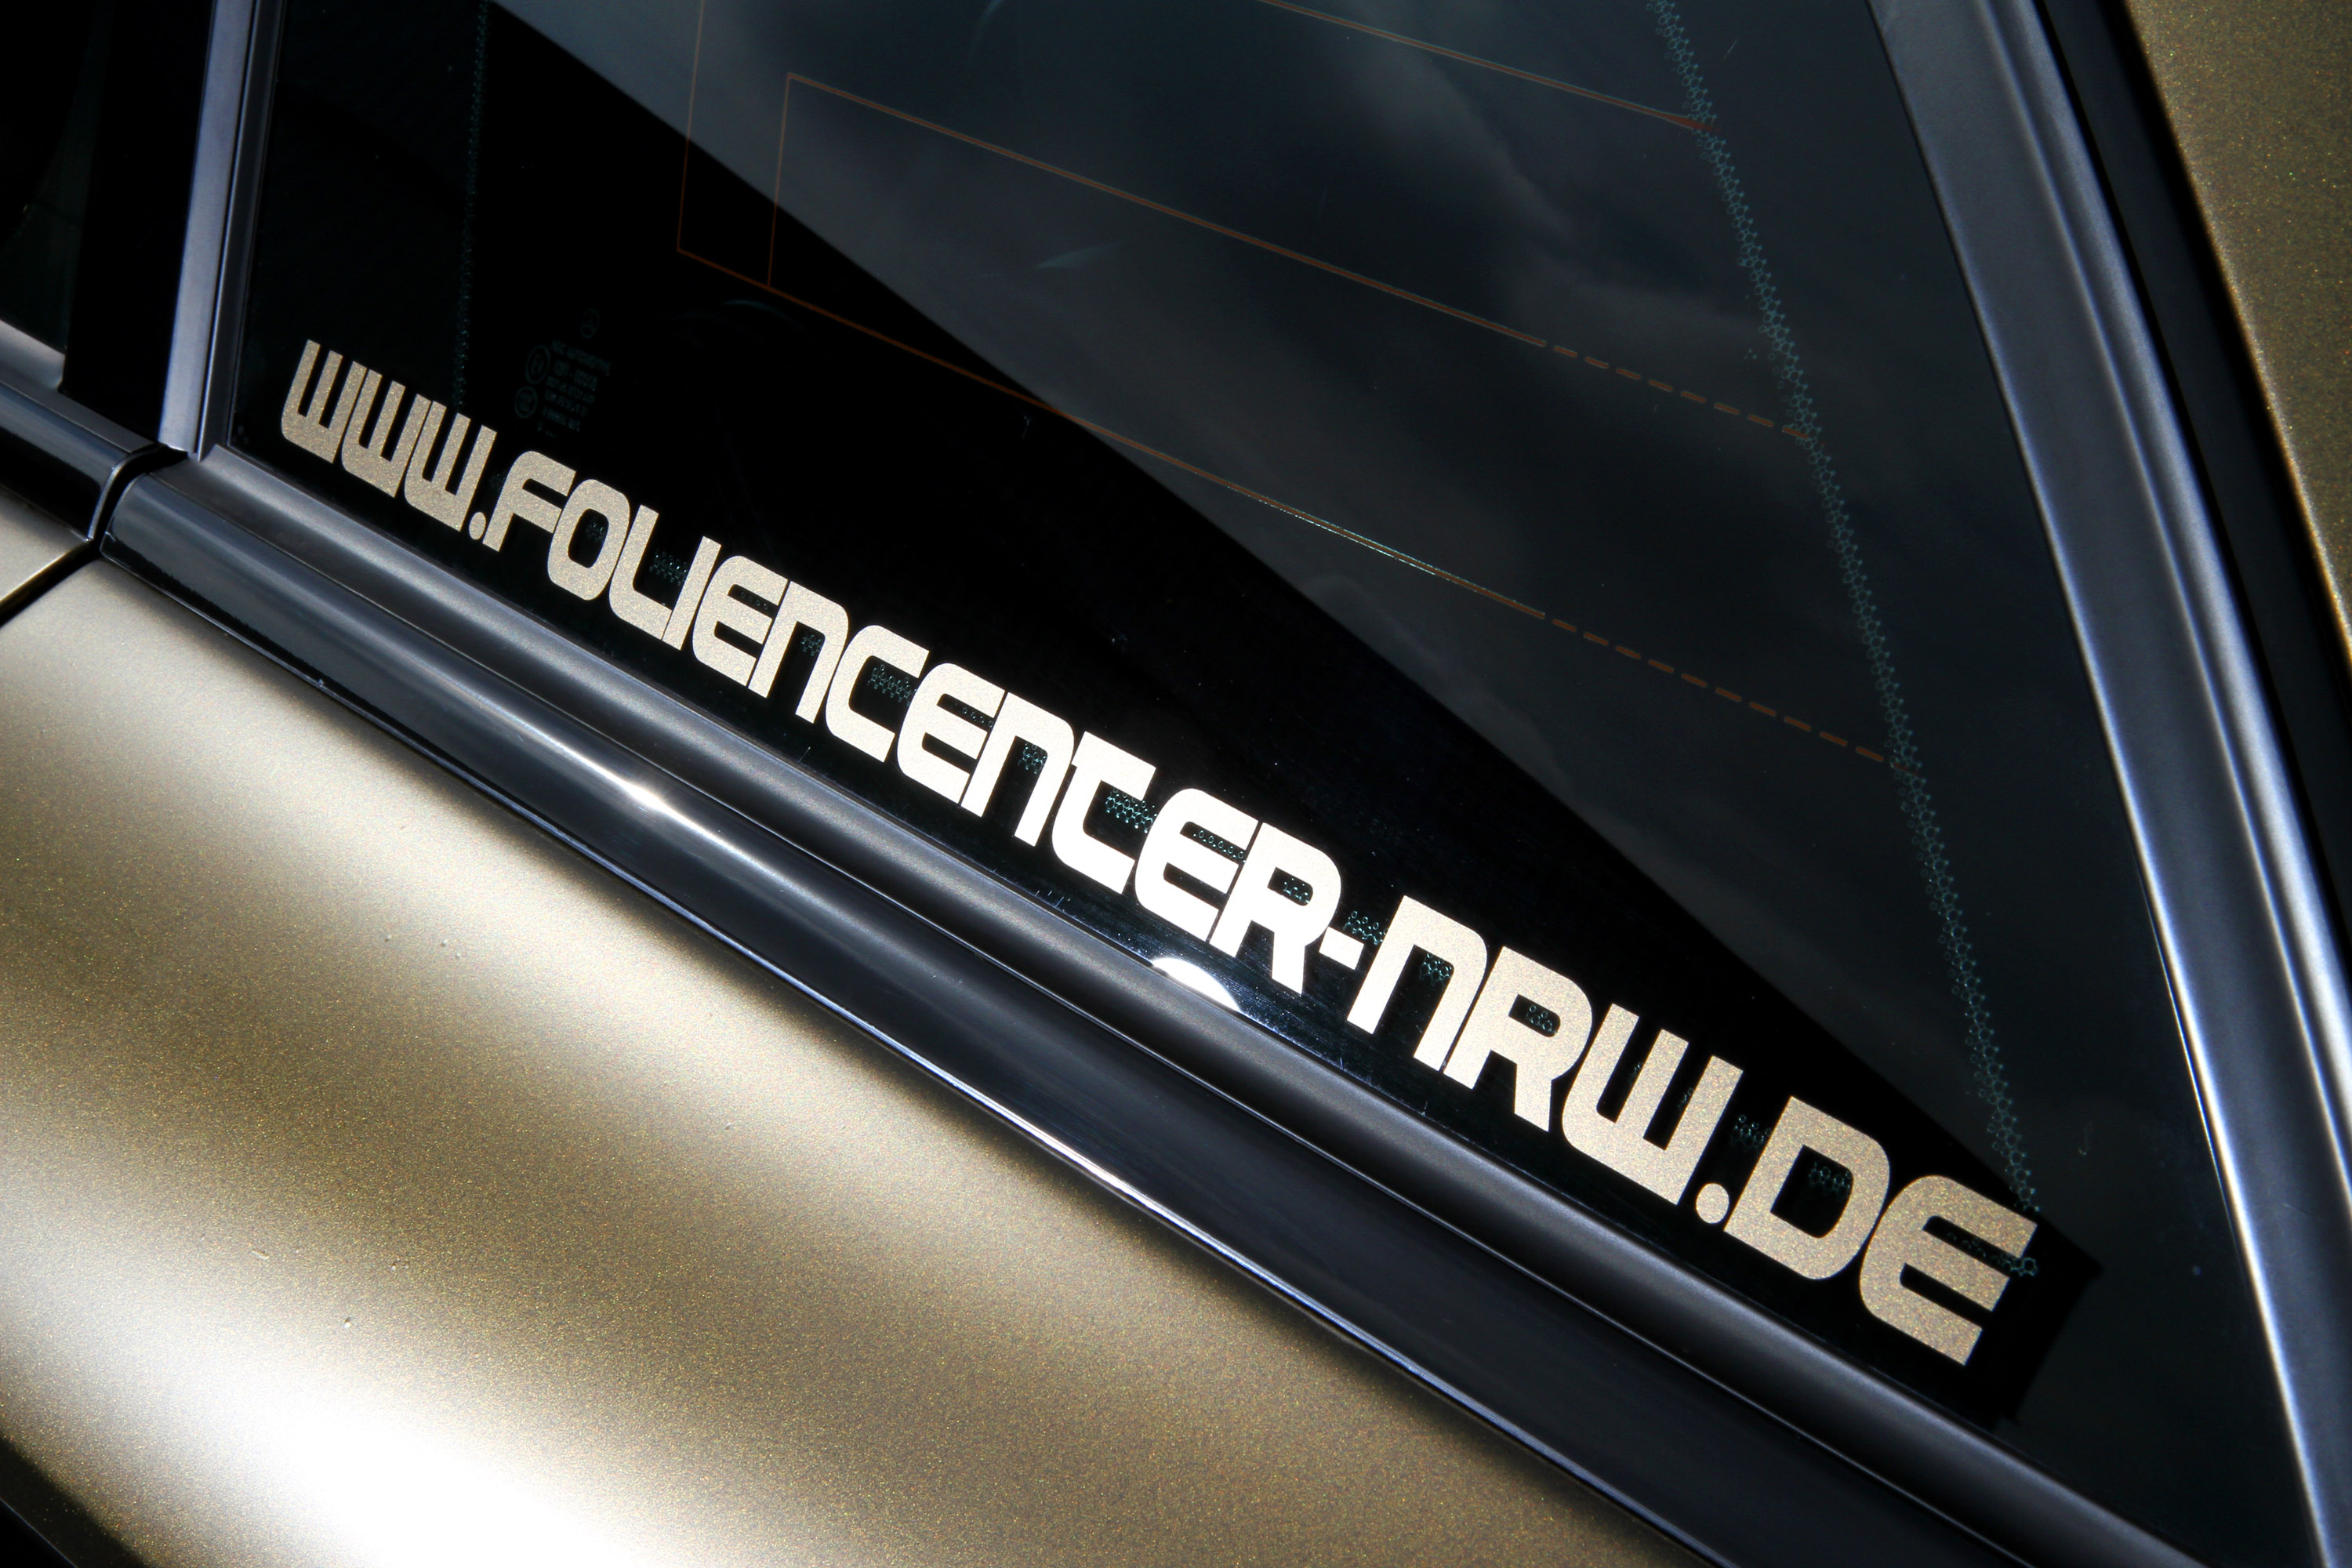 FolienCenter-NRW Mercedes-Benz C63 AMG